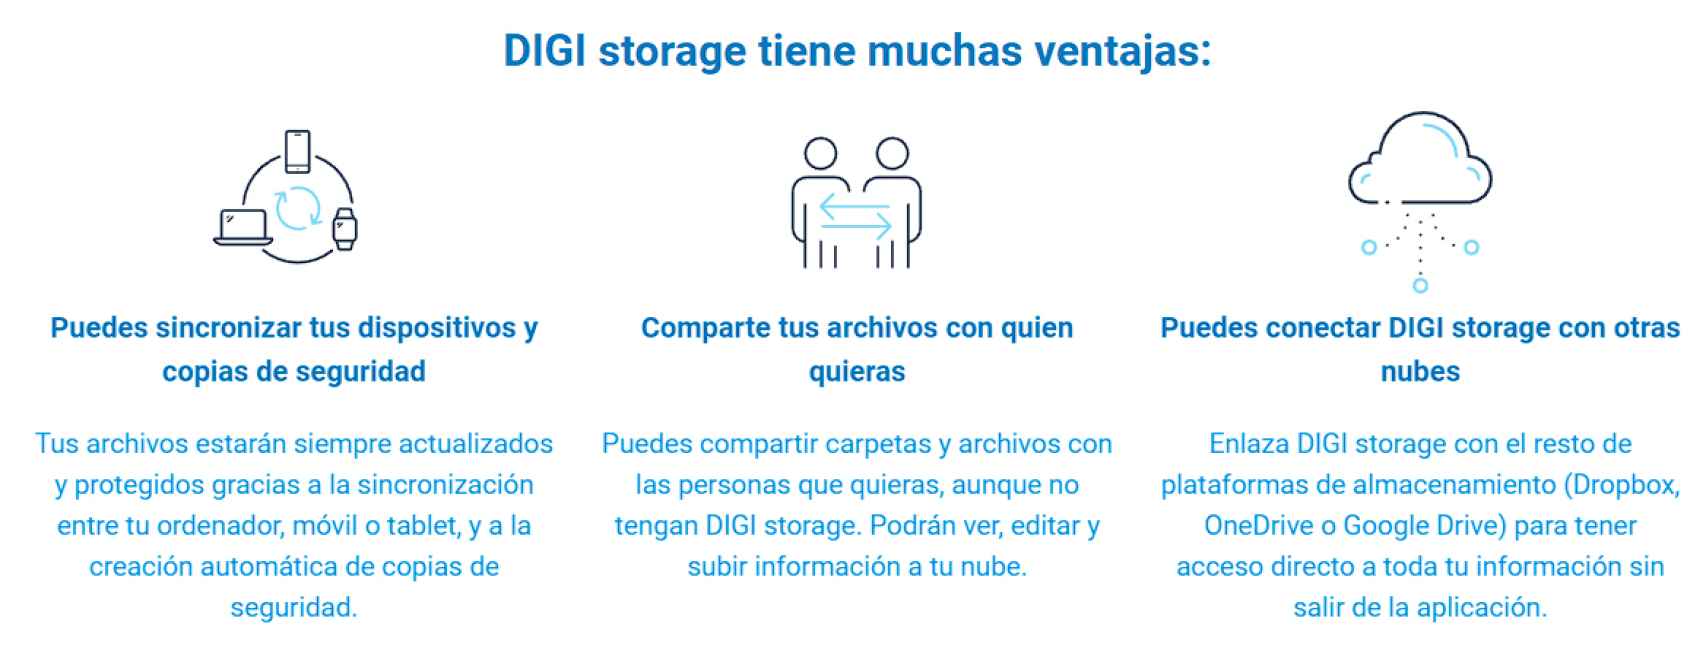 Características de Digi Storage